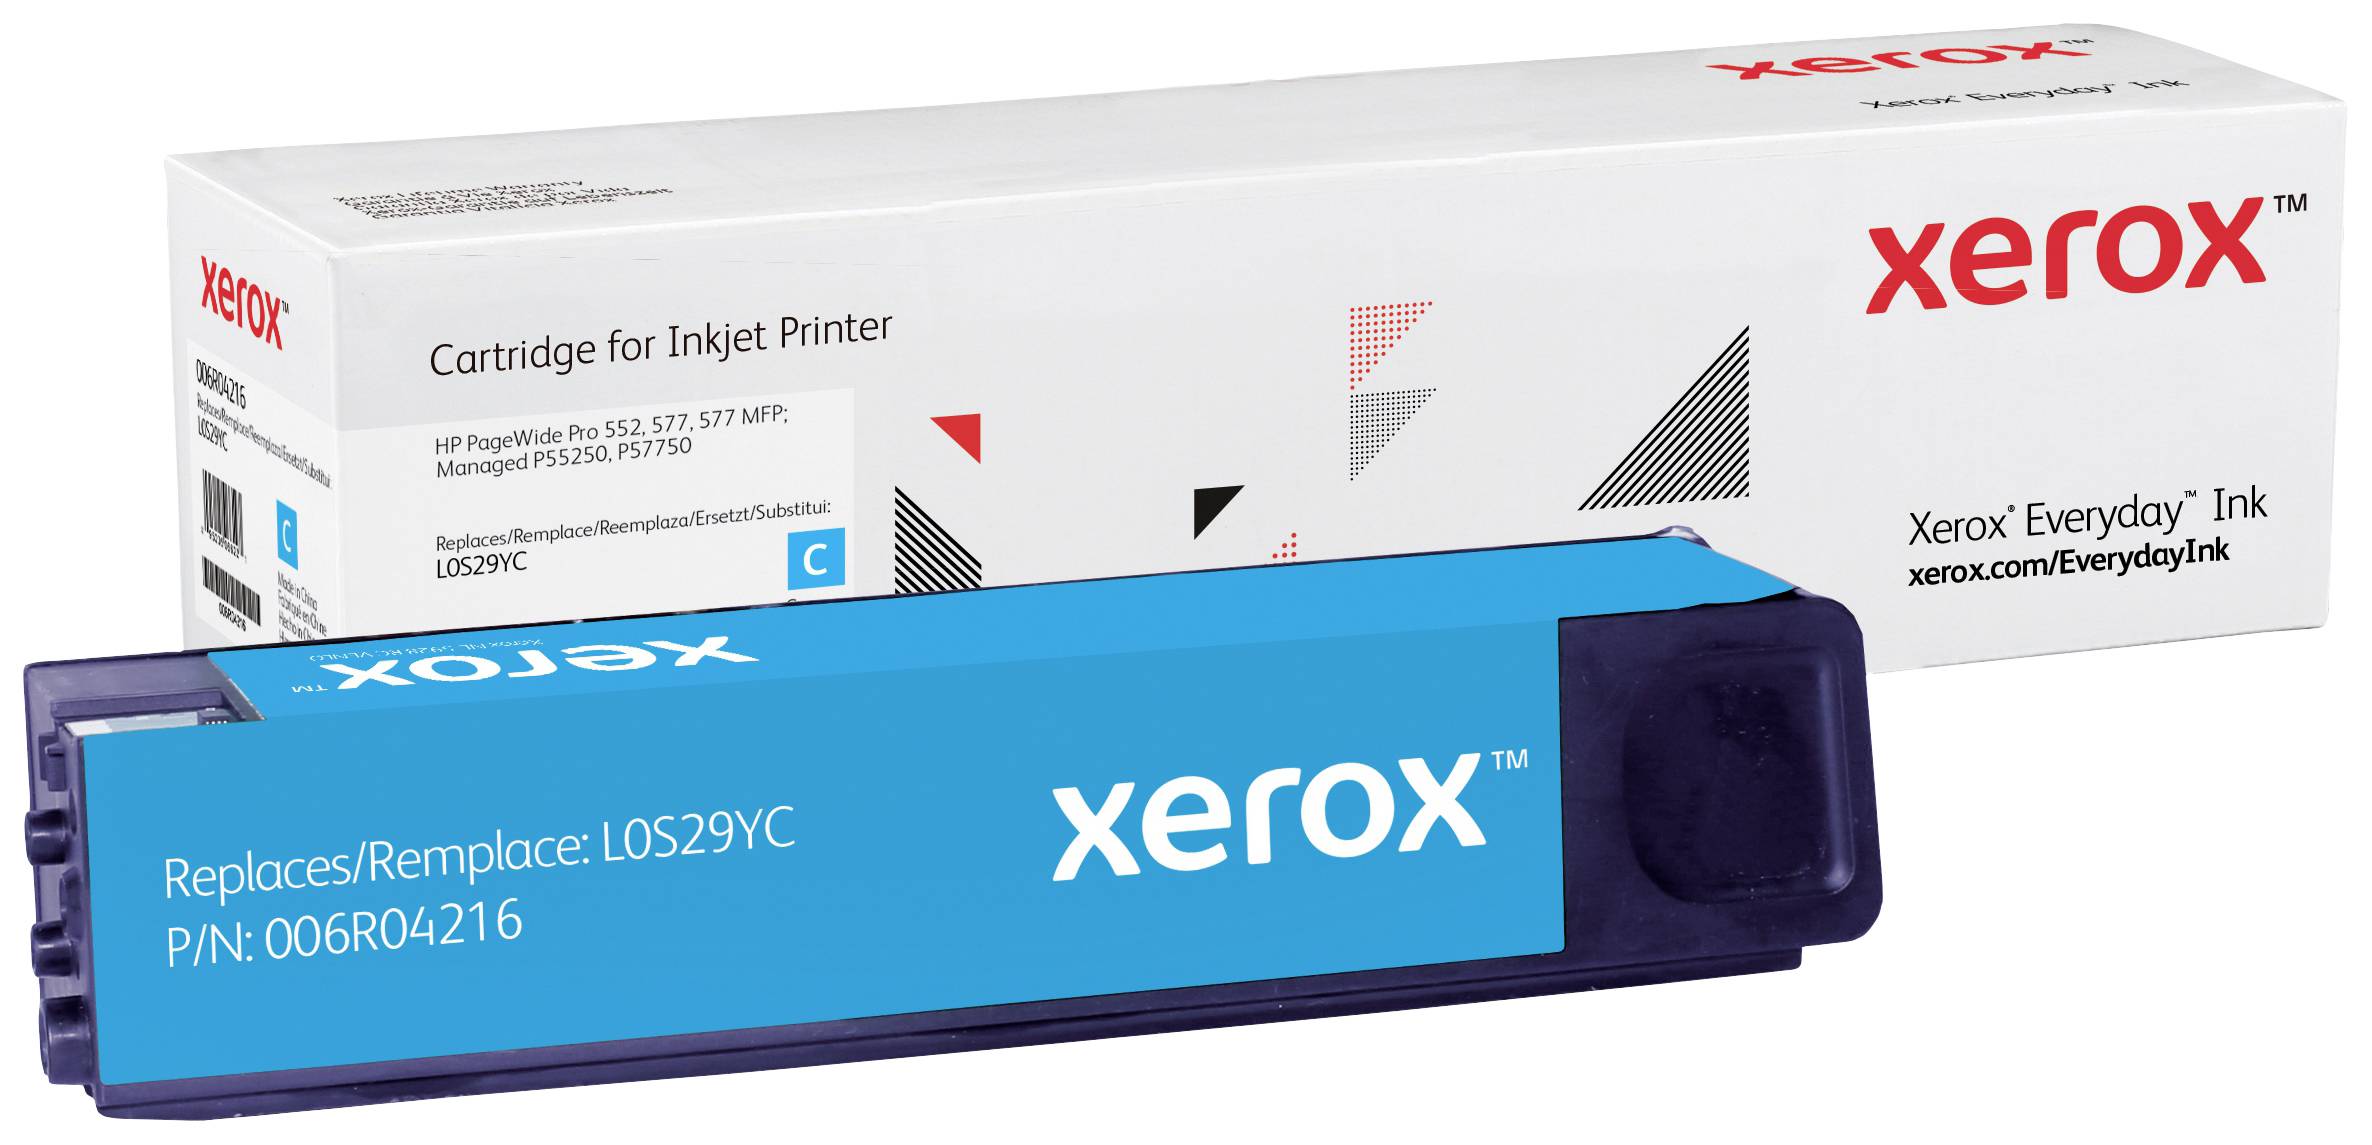 XEROX Everyday - Cyan - kompatibel - Tintenpatrone - für HP PageWide Managed MFP P57750dw, P55250dw